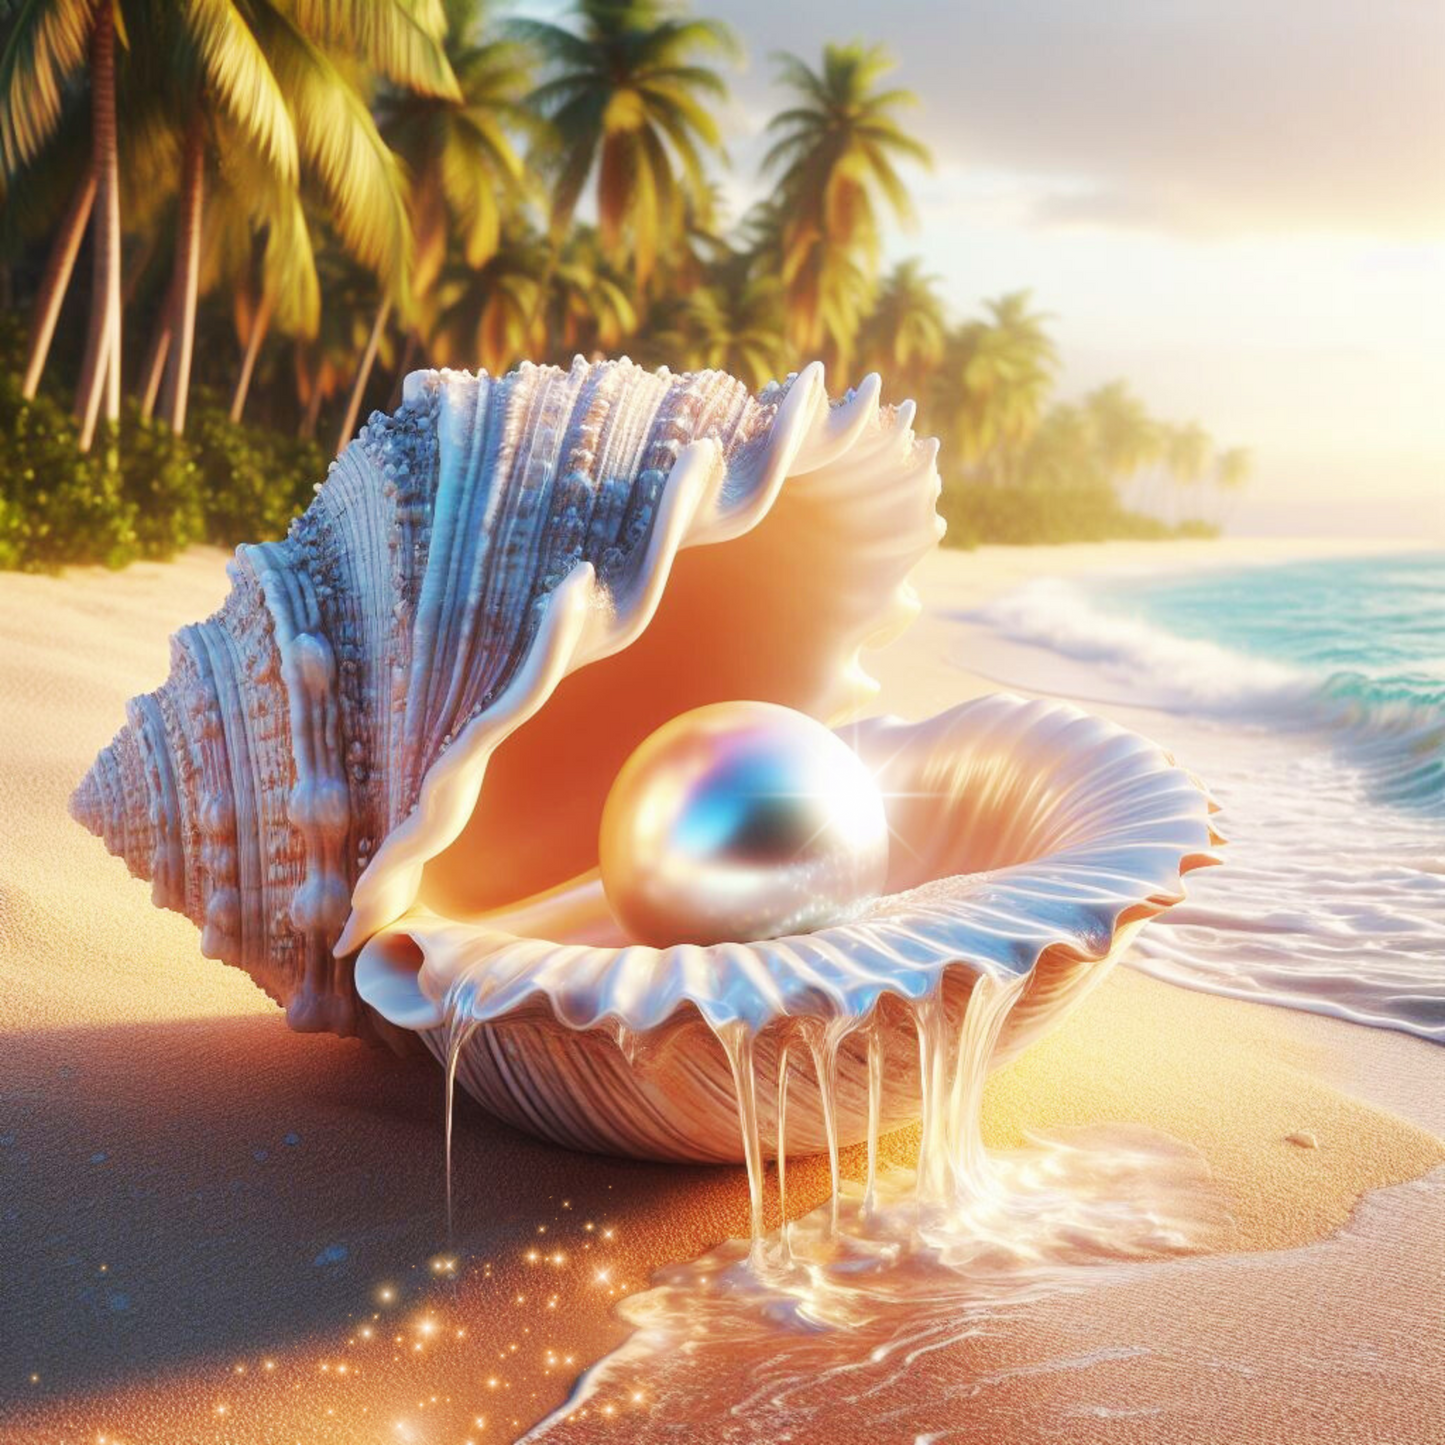 Muschel die eine Perle in sich trägt, aus ihr läuft Wasser. Sie liegt an einem tropischen Strand.